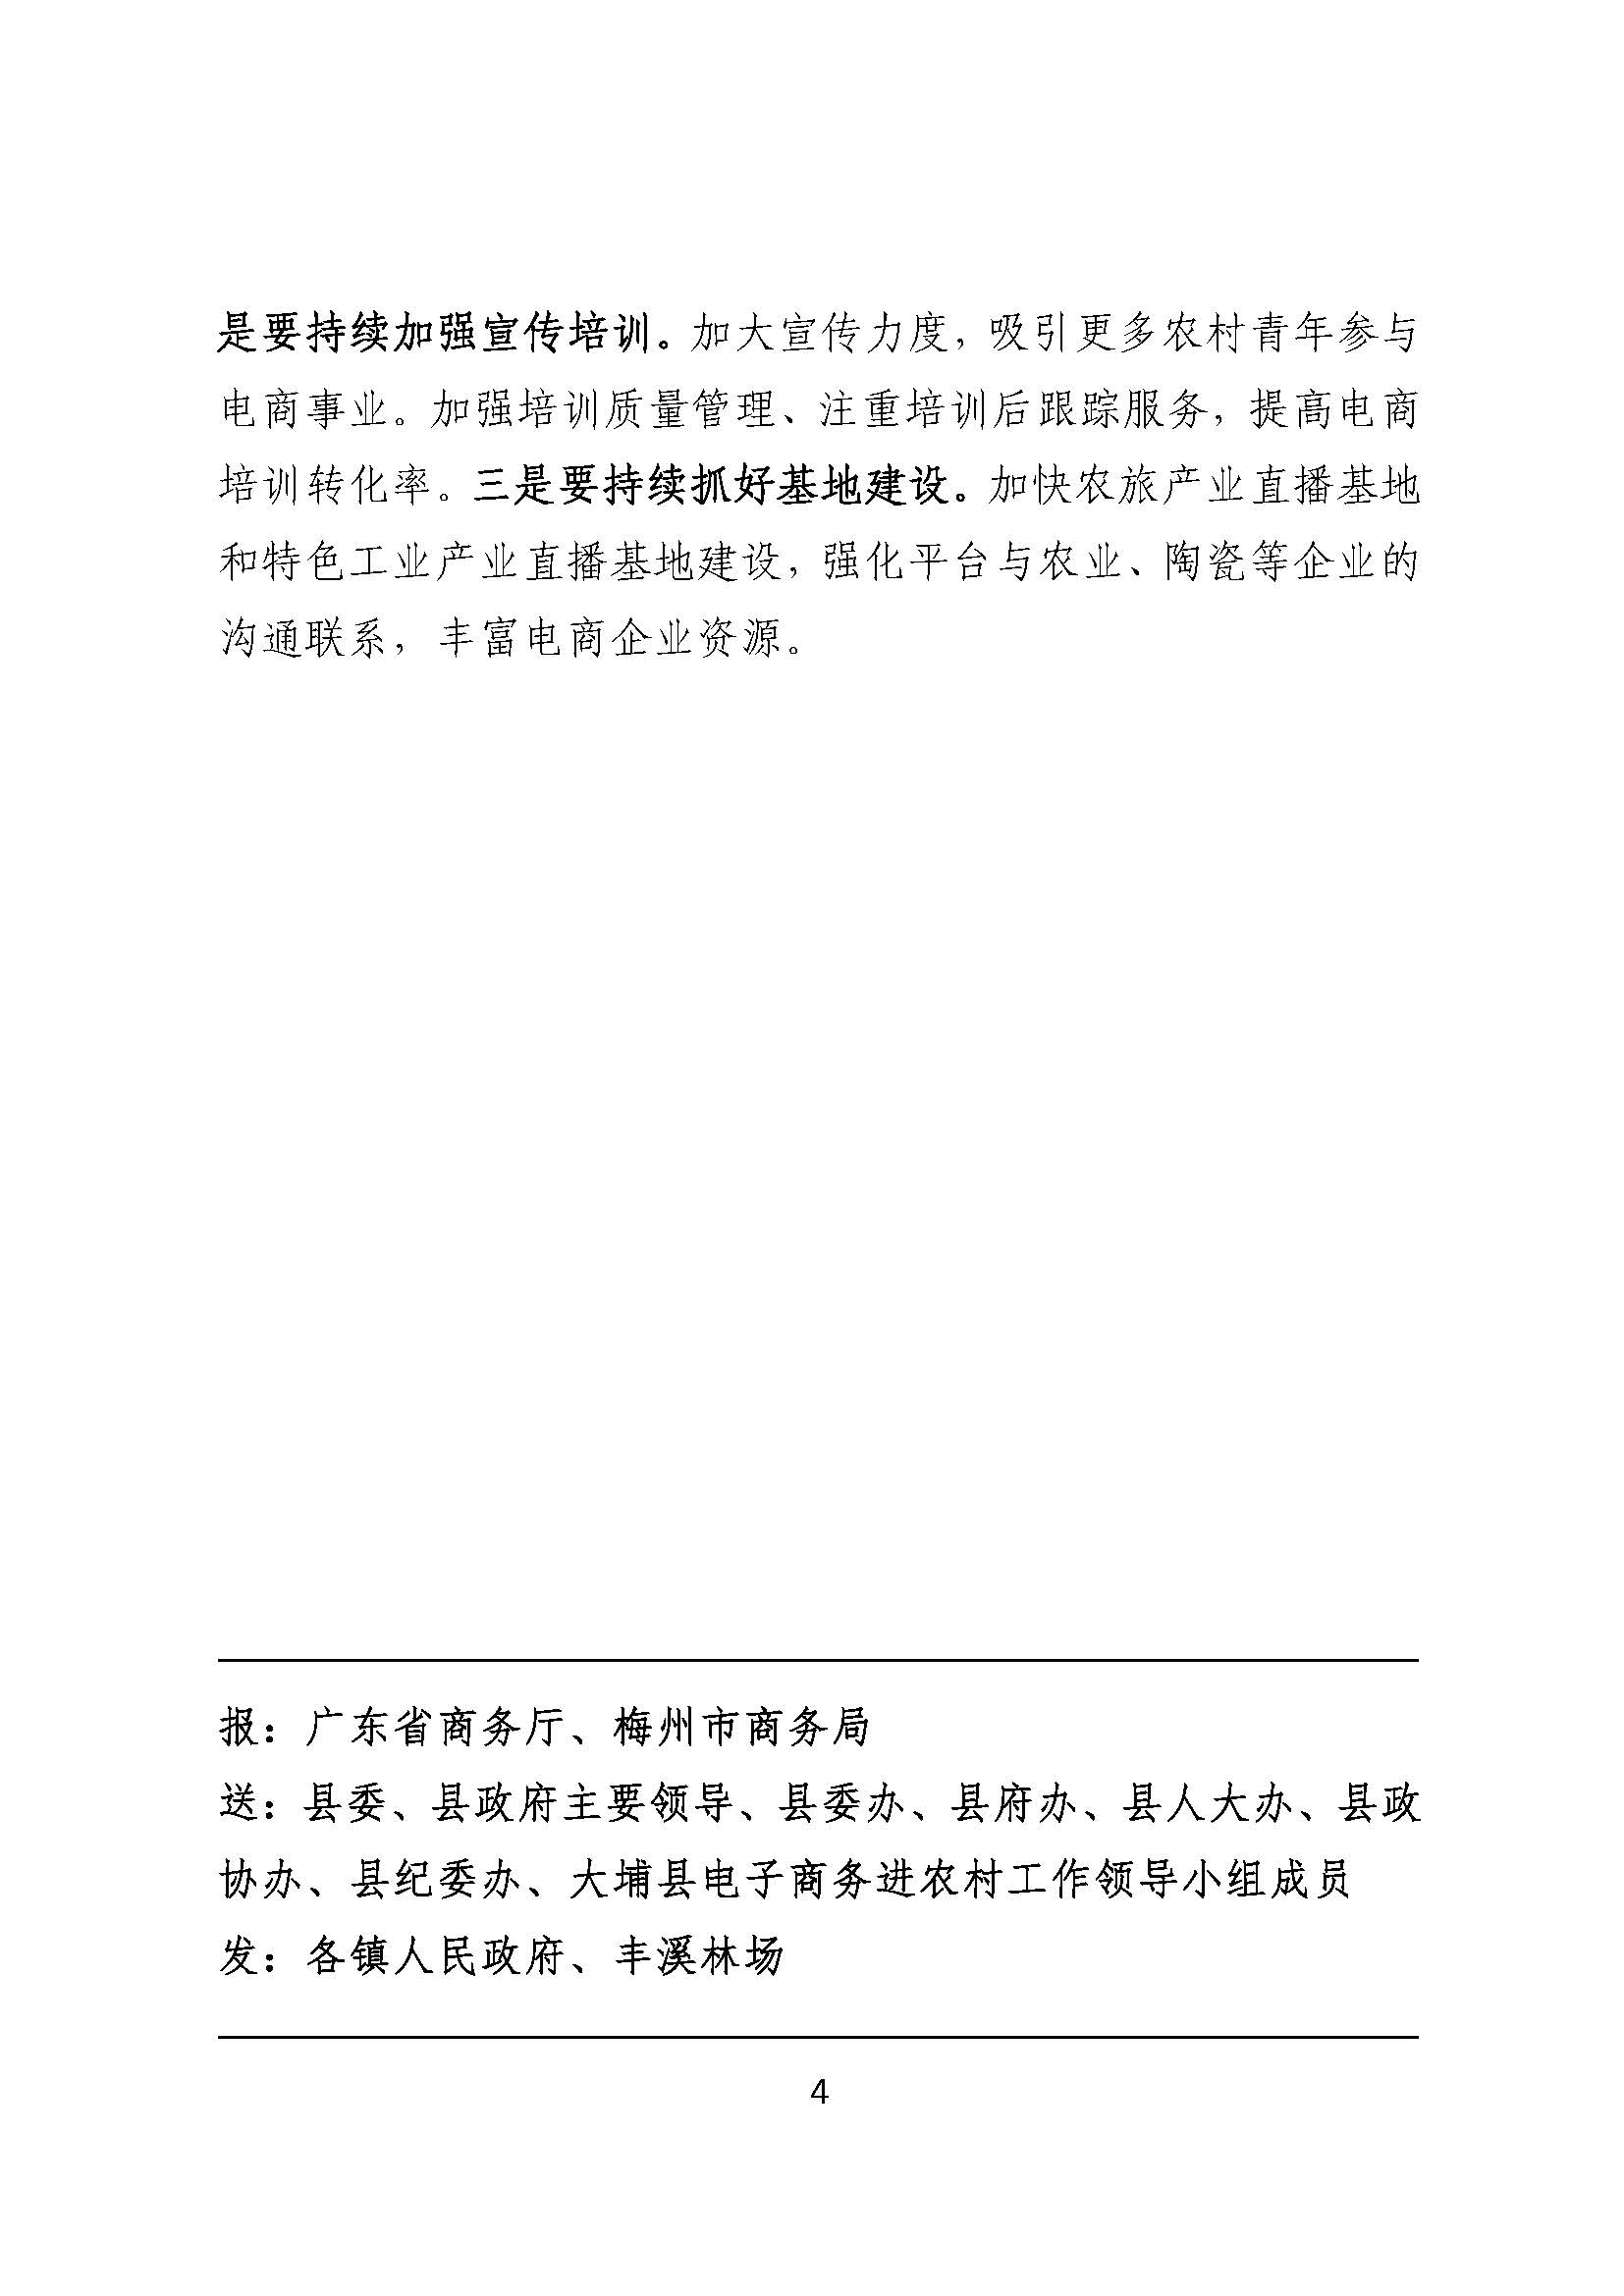 电商进农村综合示范项目工作简报第49期_页面_4.jpg